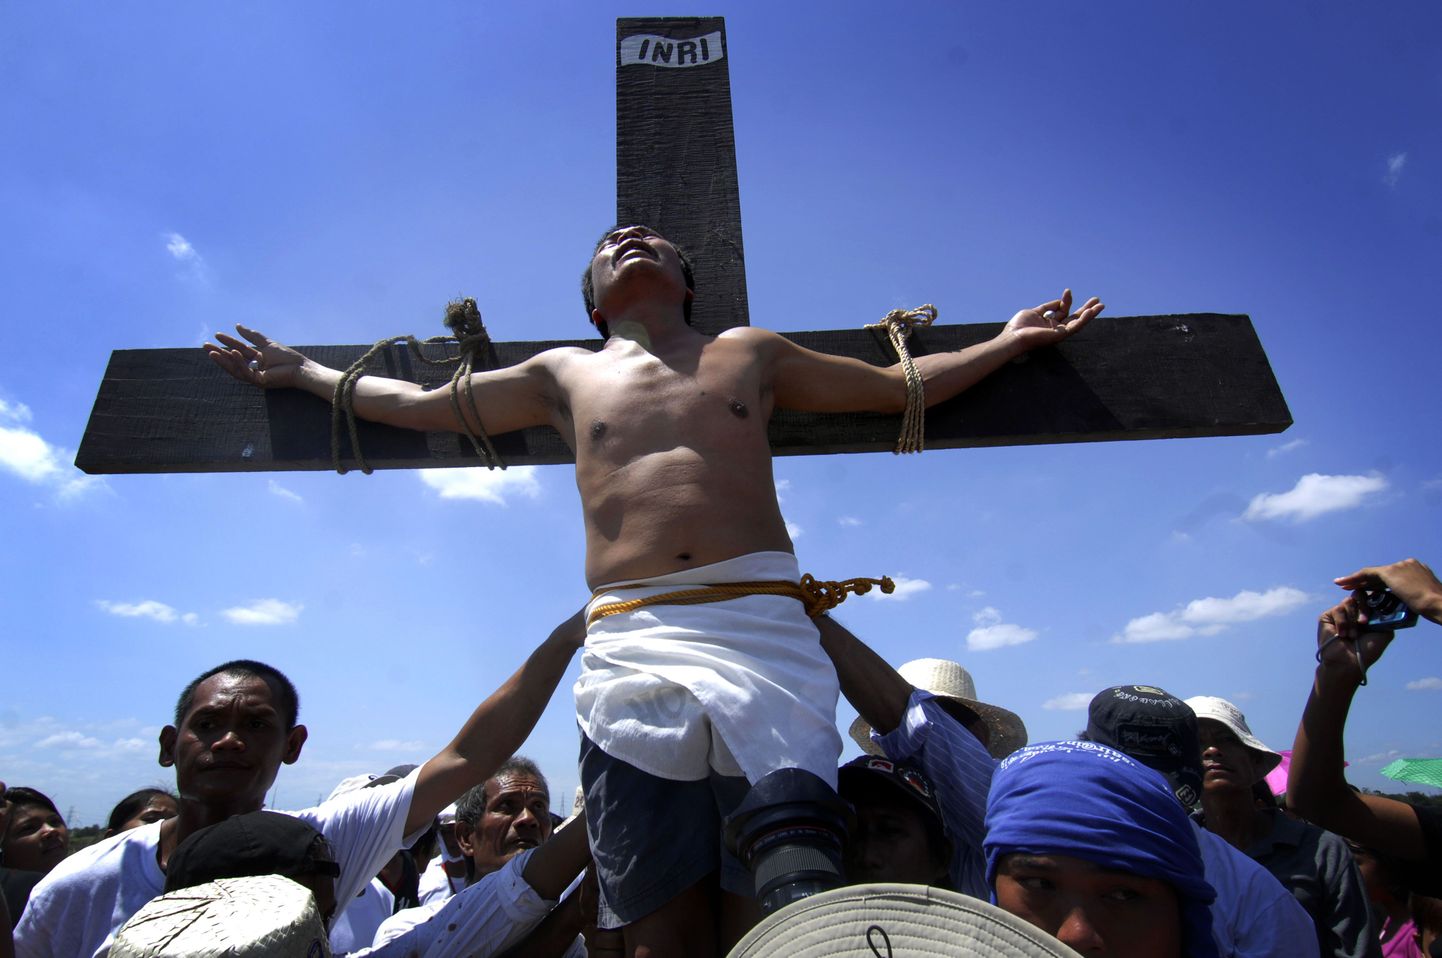 Rootsi maineka teoloogi arvates ei surnud Jeesus ristil. Fotol Filipiinide usklikud Jeesuse väidetavat ristilöömist uuesti lavastamas